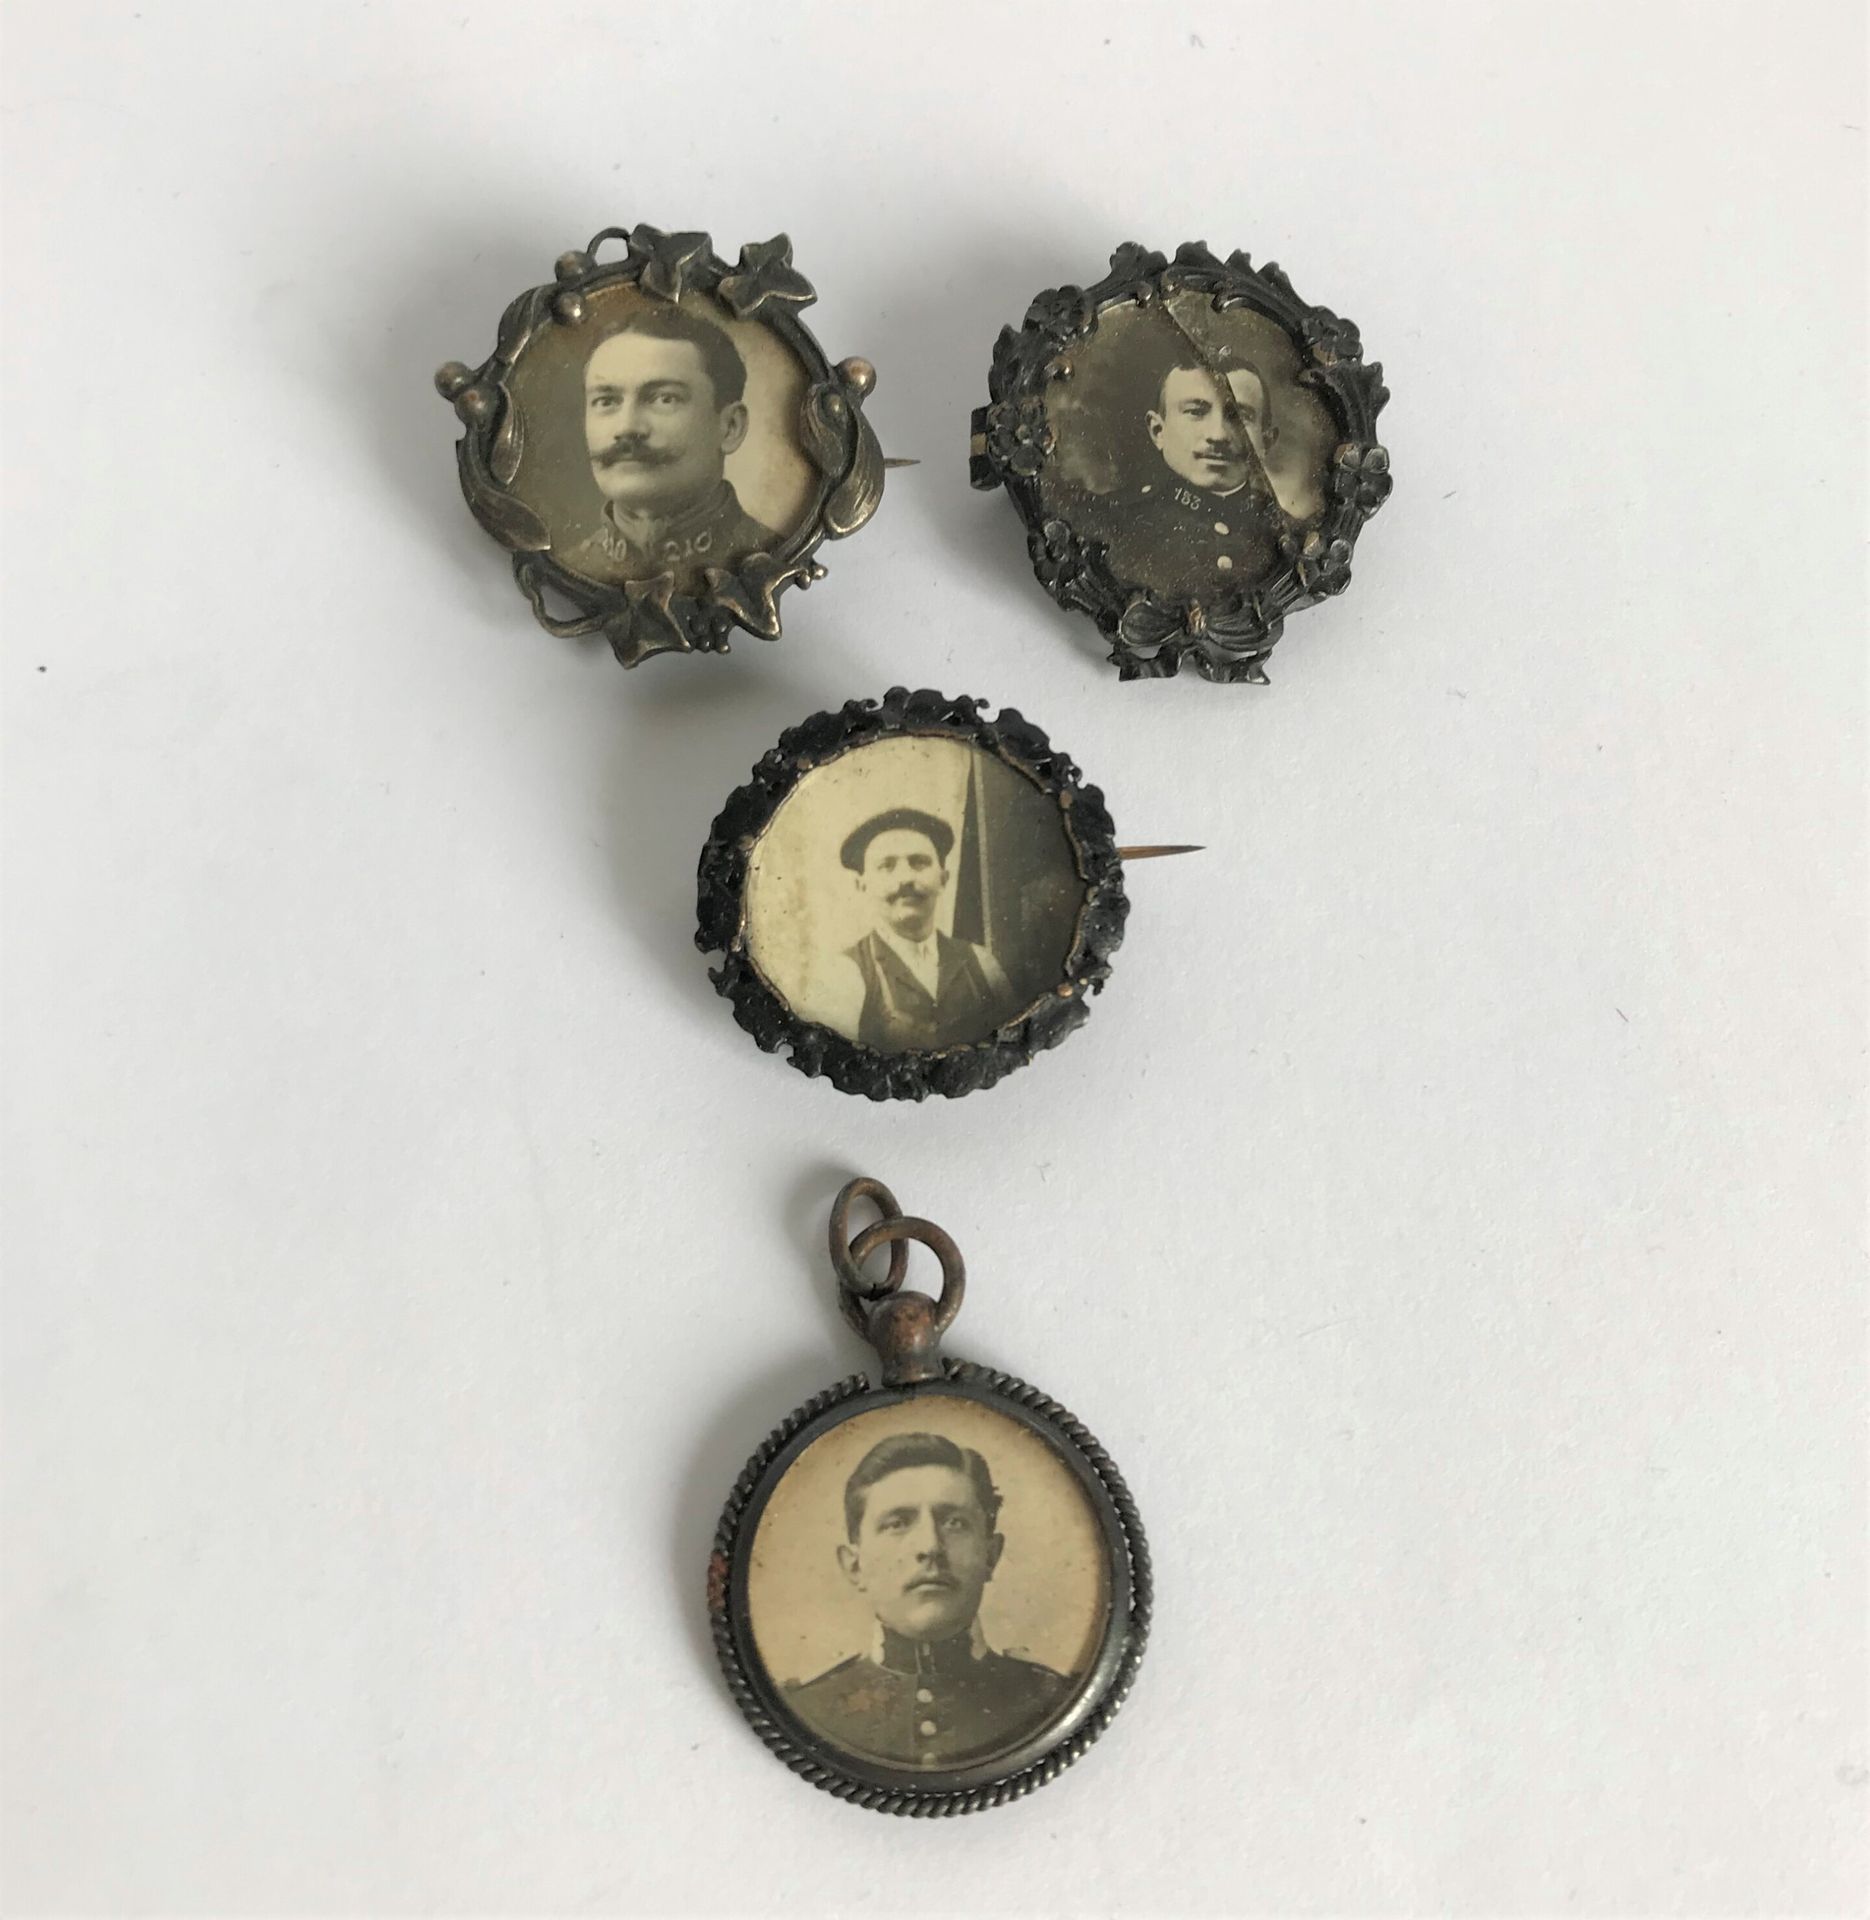 Null 一套四枚带有士兵照片的凿刻金属奖章或吊坠。

D.2.5厘米

一个破碎的玻璃